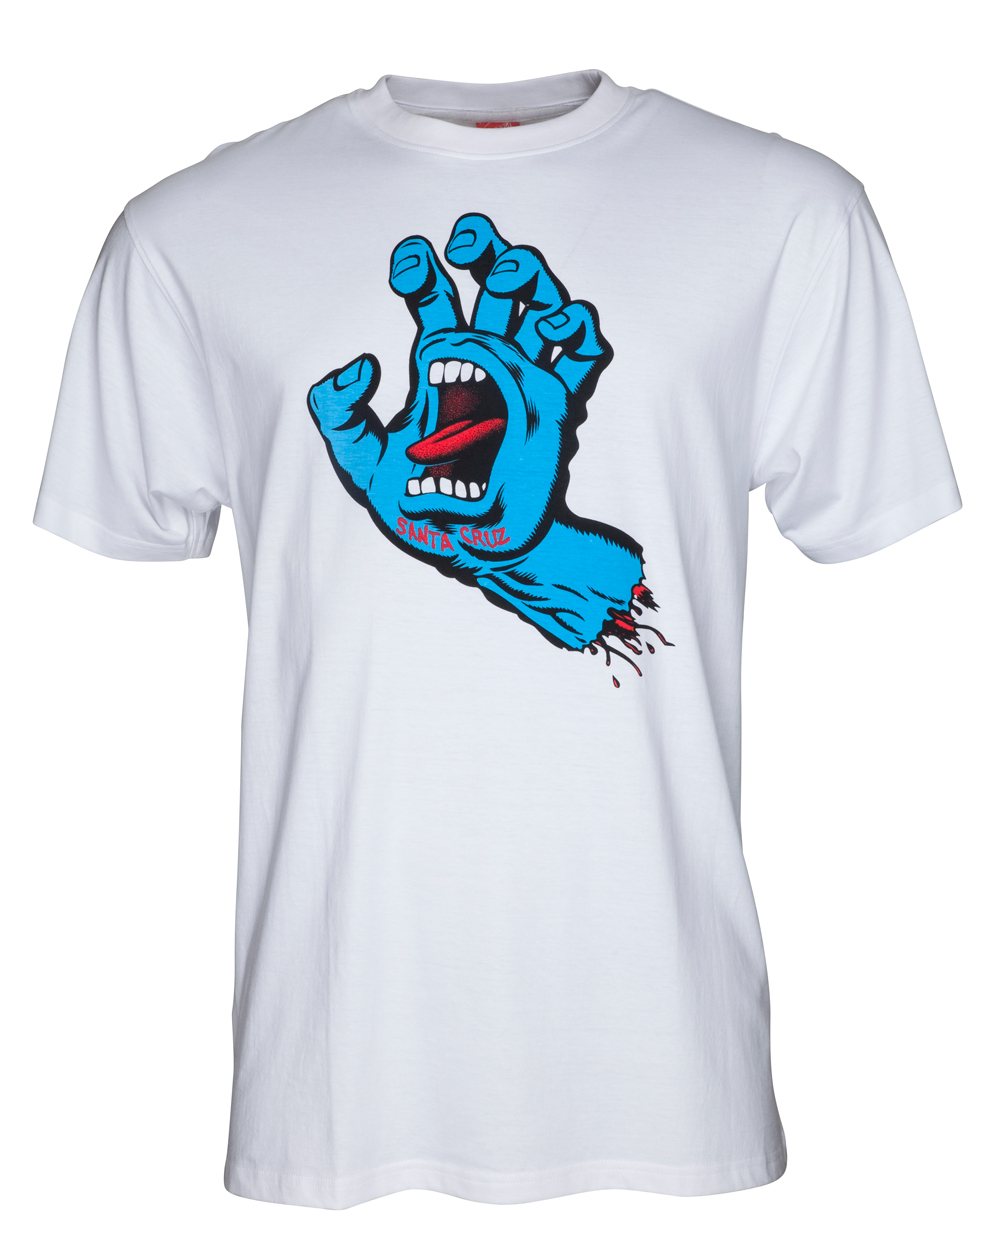 Santa Cruz Herren T-Shirt Screaming Hand White